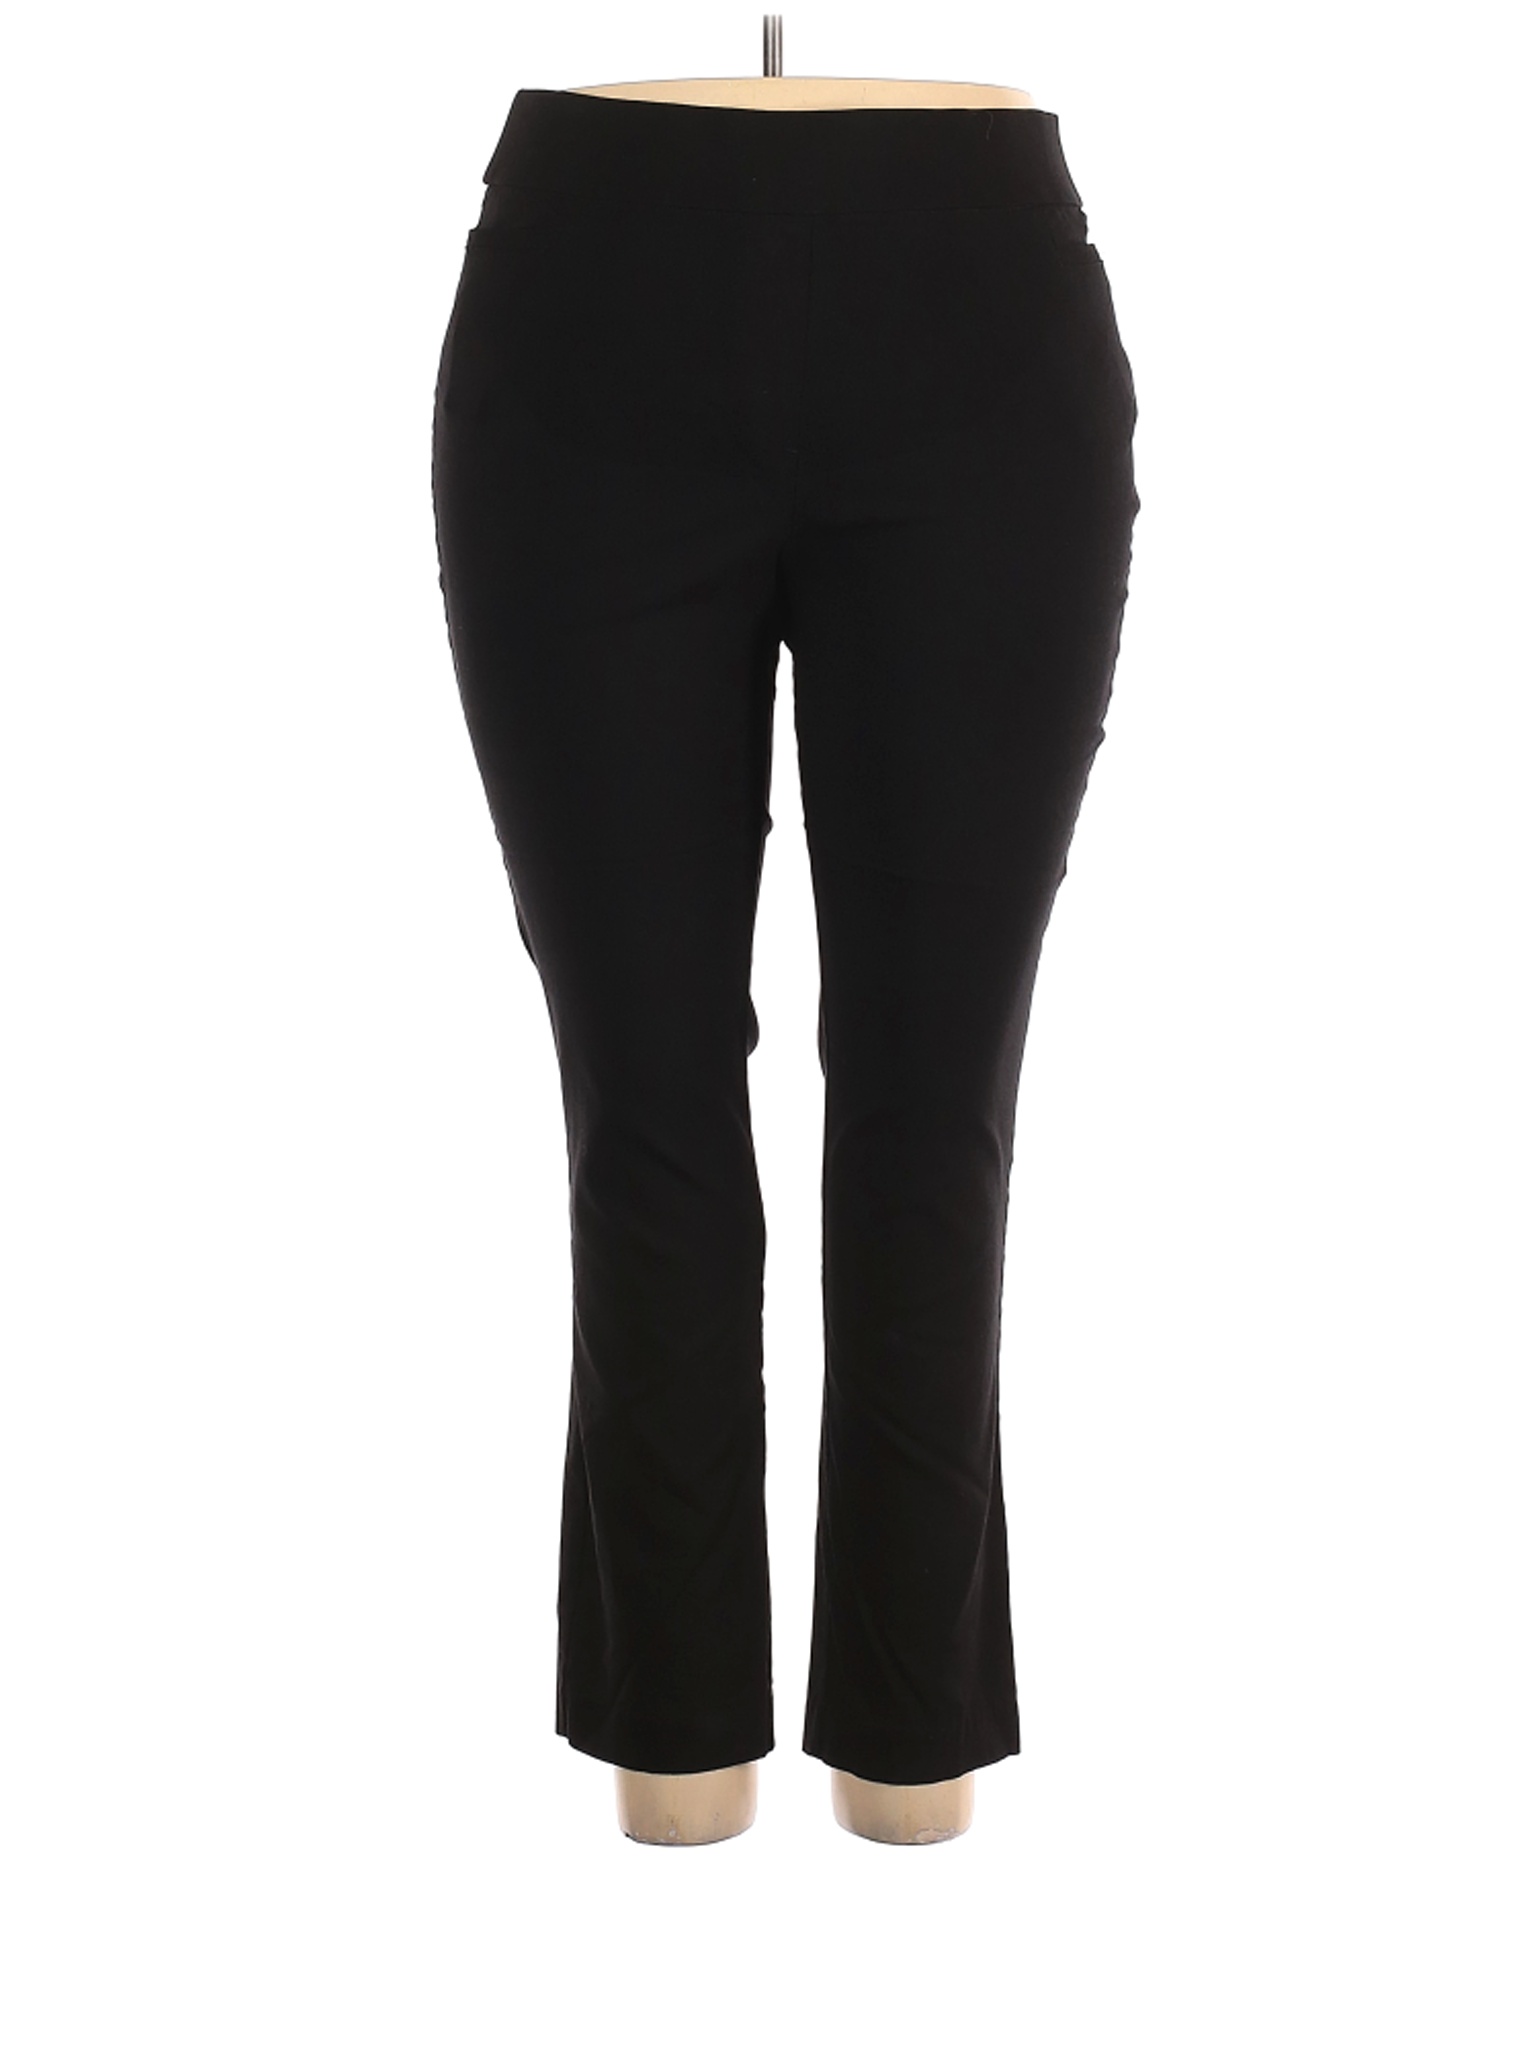 Evri Women Black Dress Pants 18 Plus | eBay